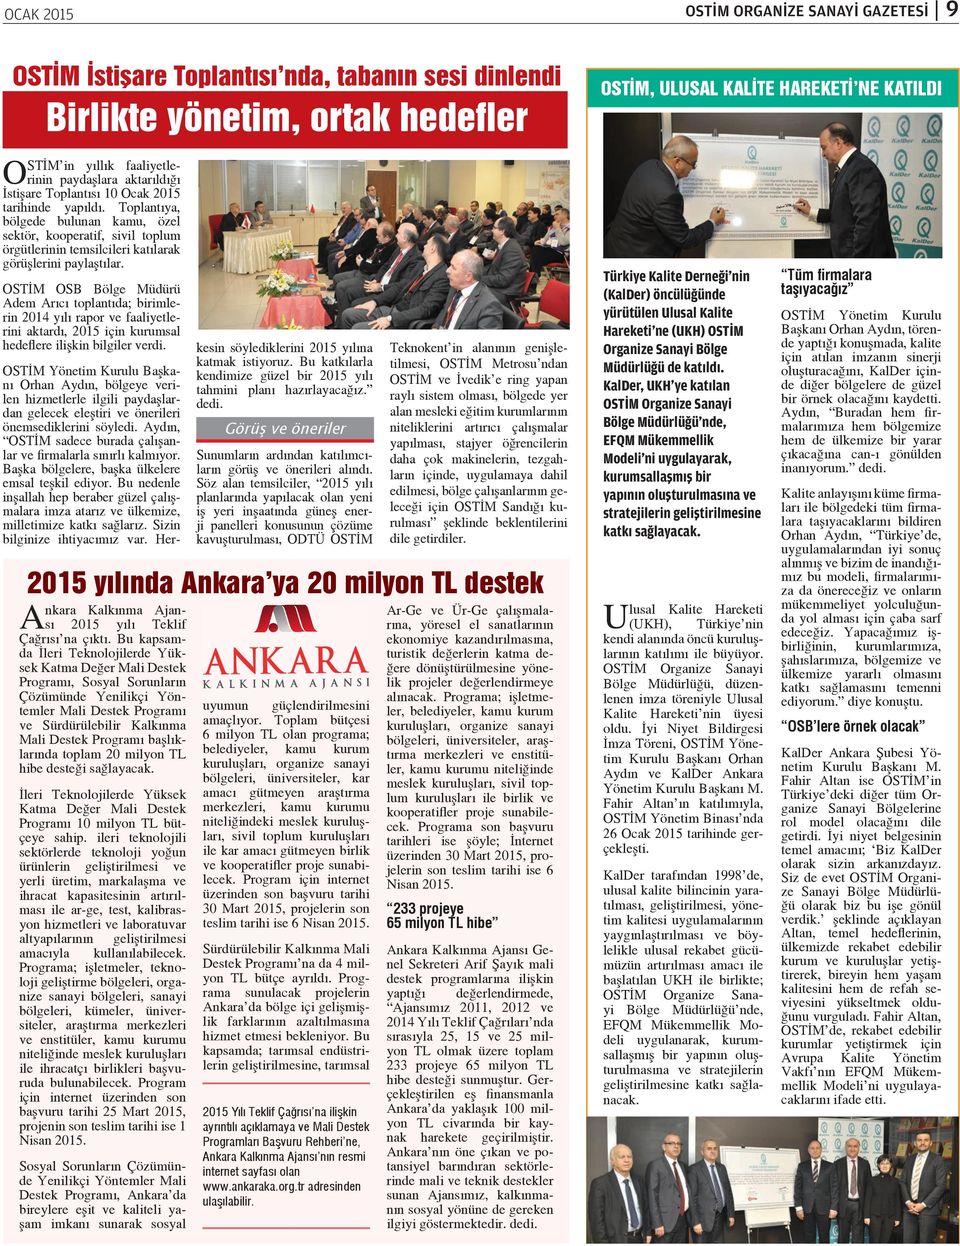 OSTİM OSB Bölge Müdürü Adem Arıcı toplantıda; birimlerin 2014 yılı rapor ve faaliyetlerini aktardı, 2015 için kurumsal hedeflere ilişkin bilgiler verdi.